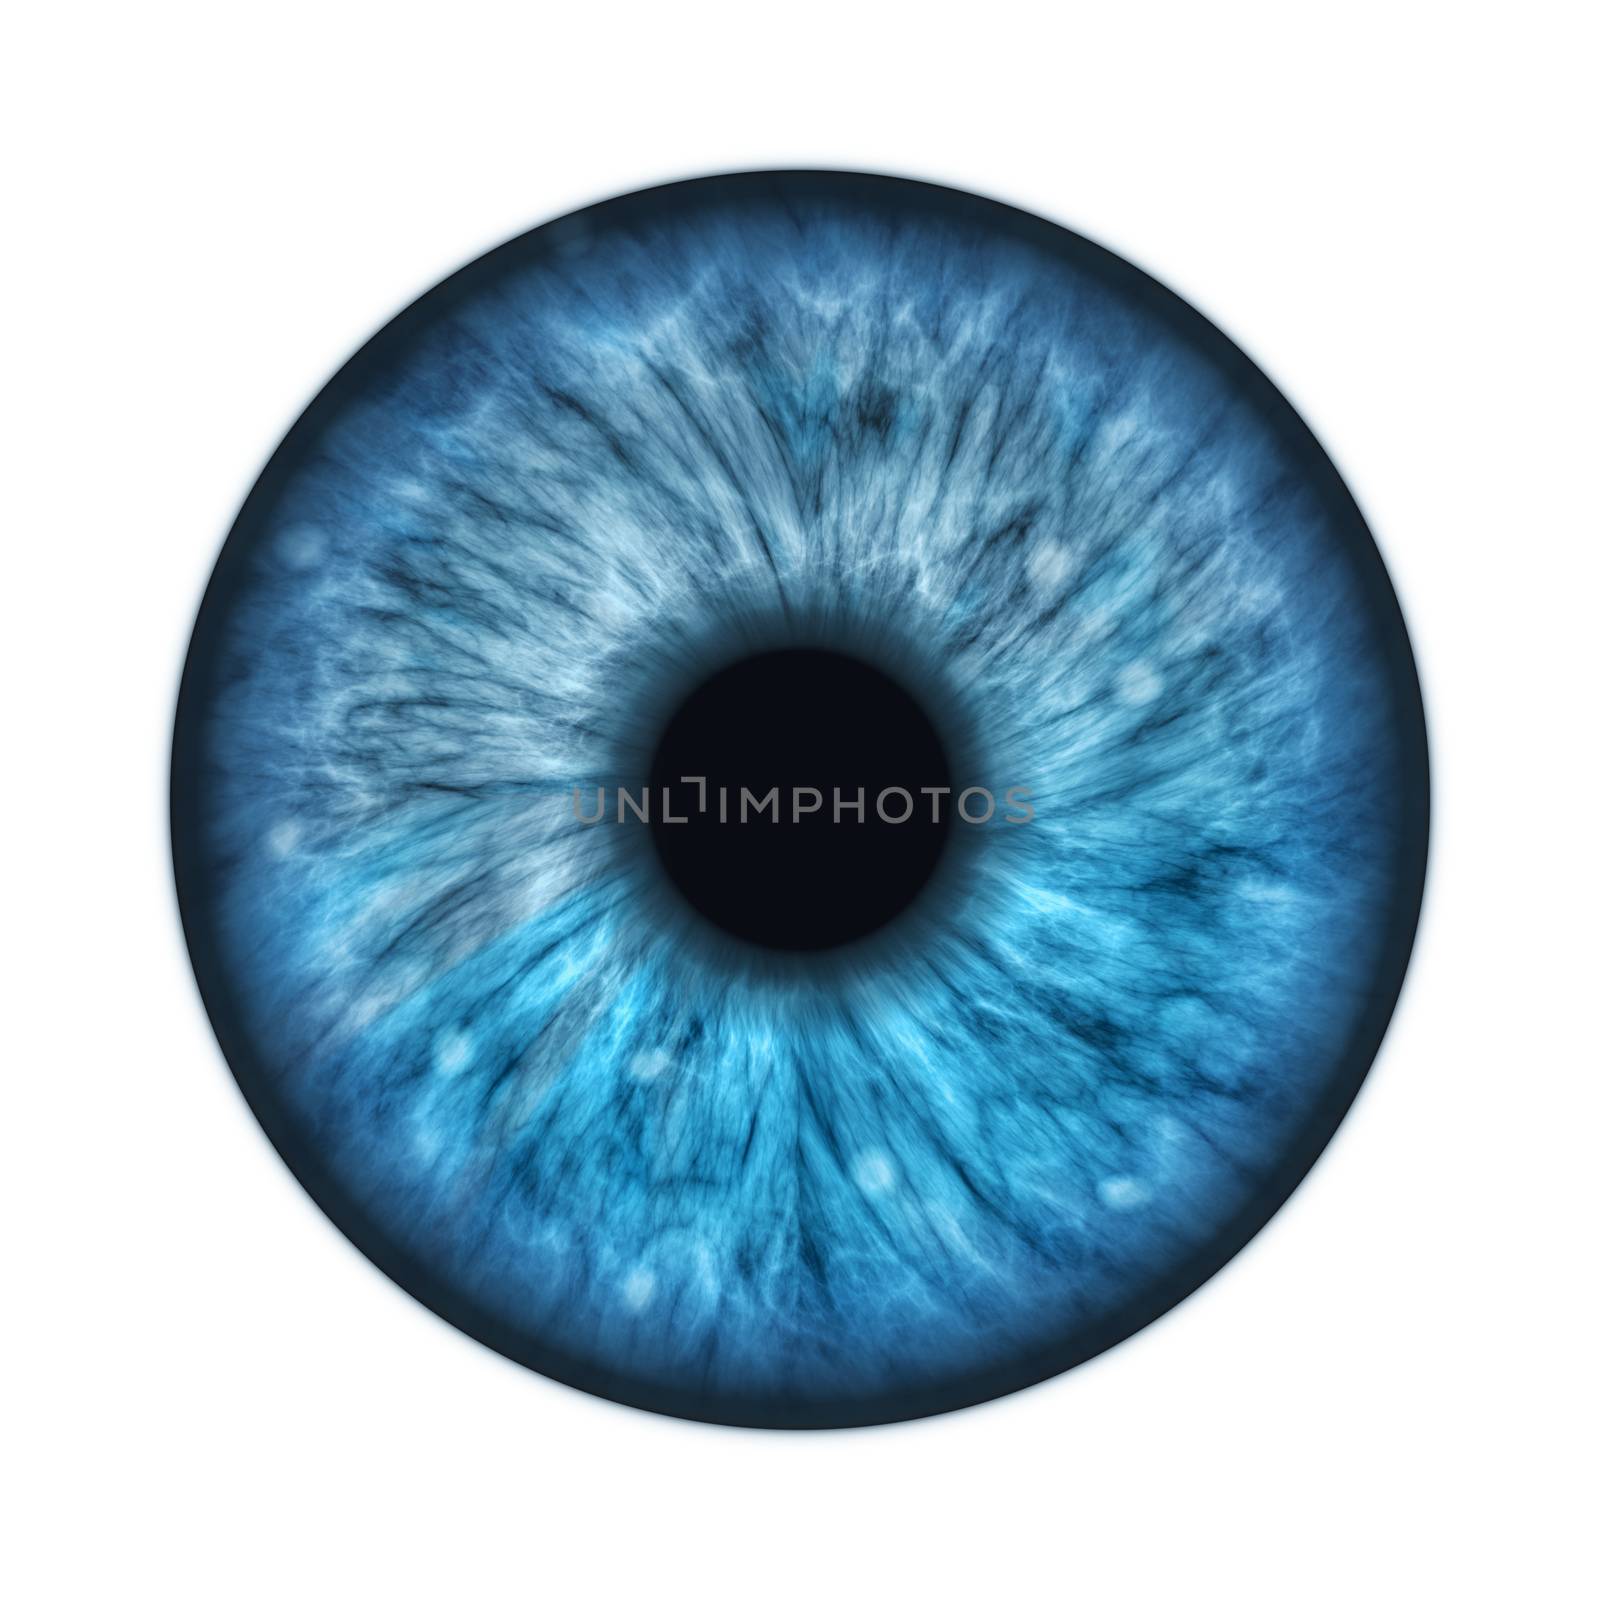 An illustration of a blue human iris